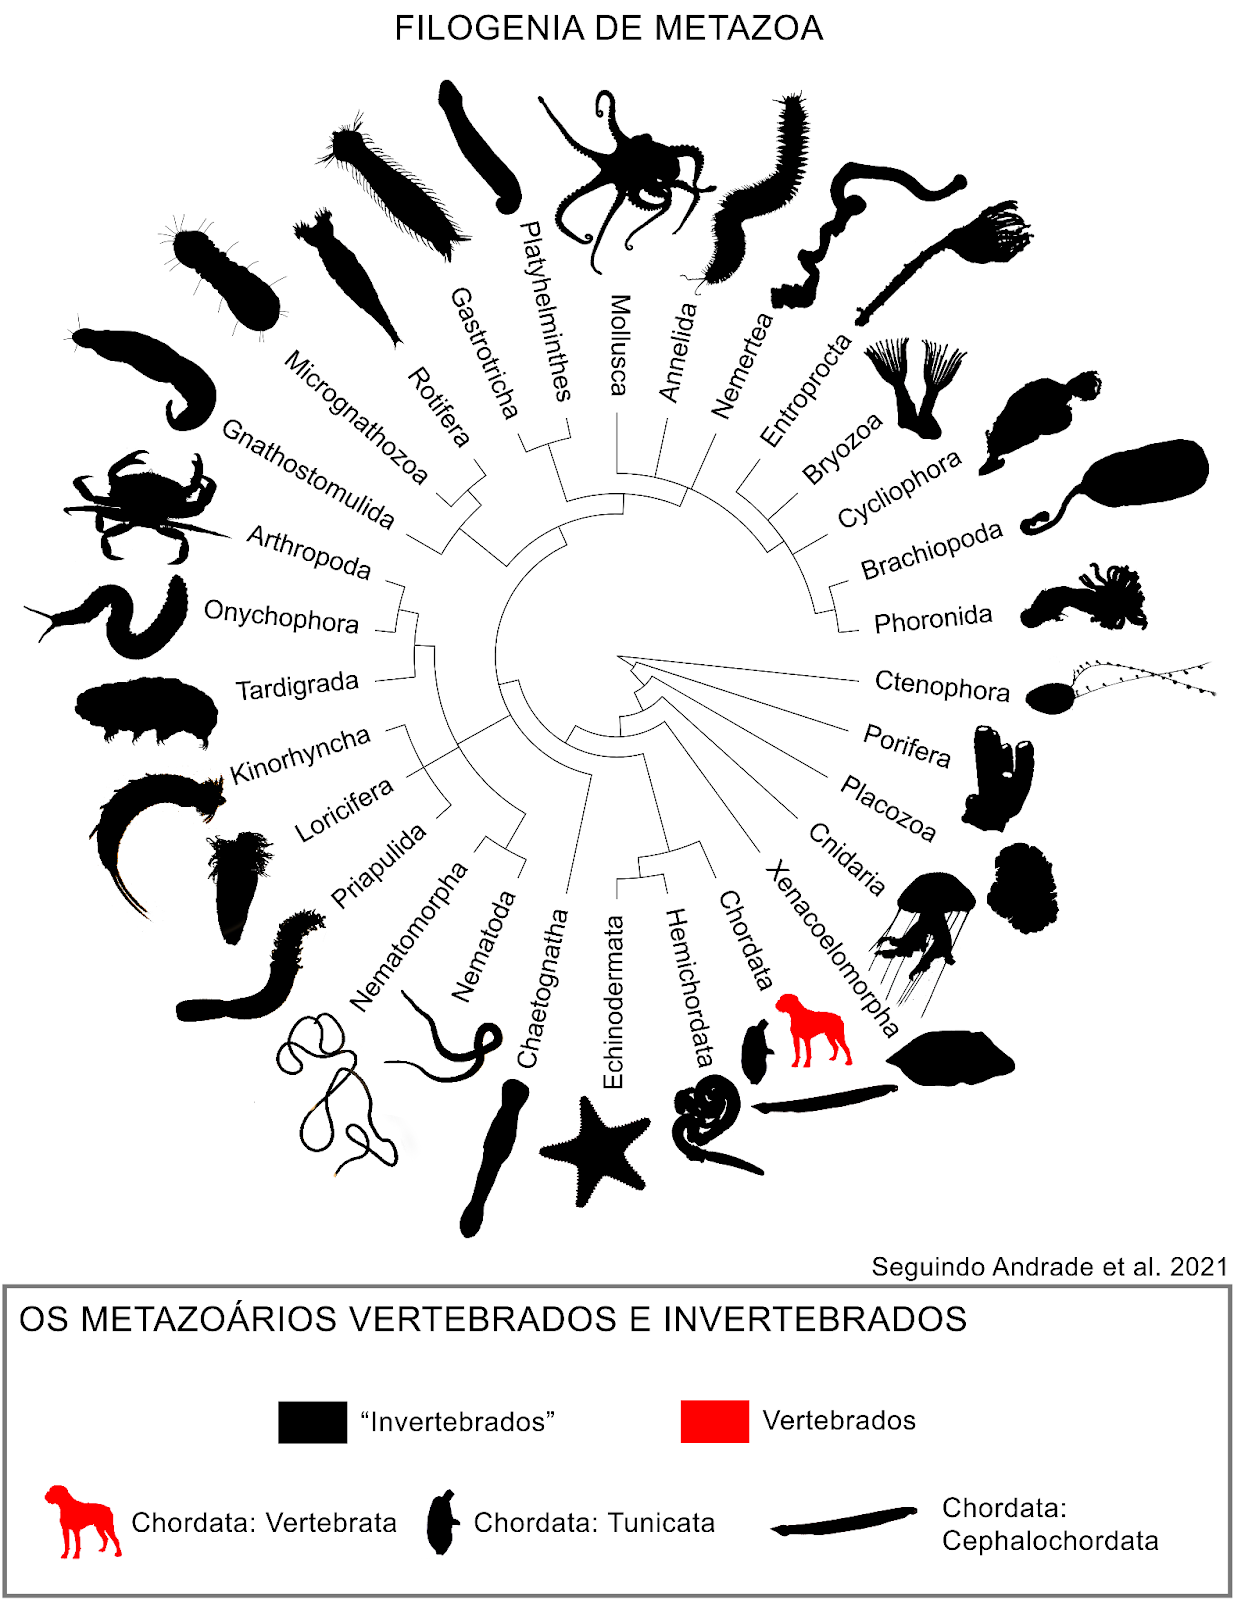 filogenia de metazoa - É adequado chamar animais sem coluna vertebral de invertebrados? (V.7, N.4, P.4, 2024)